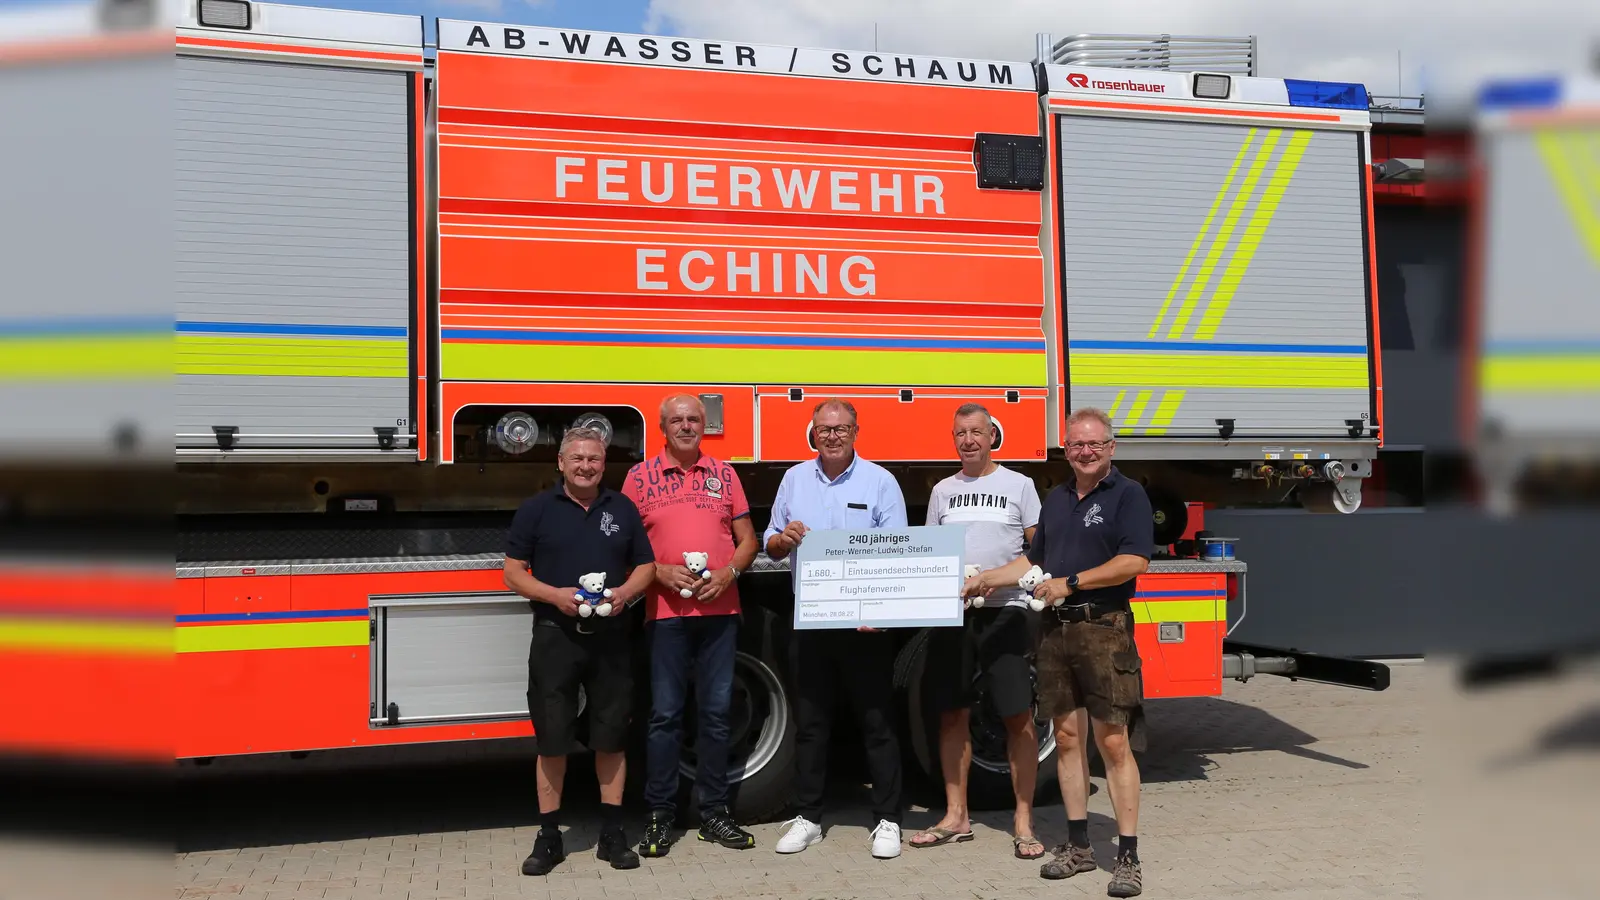 Die edlen Spender (von links): Peter Ramisch, Ludwig Vilser, Thomas Bihler (Vorsitzender Flughafenverein München), Werner Haas und Stefan Maidl. (Foto: Dagmar Zillgitt)